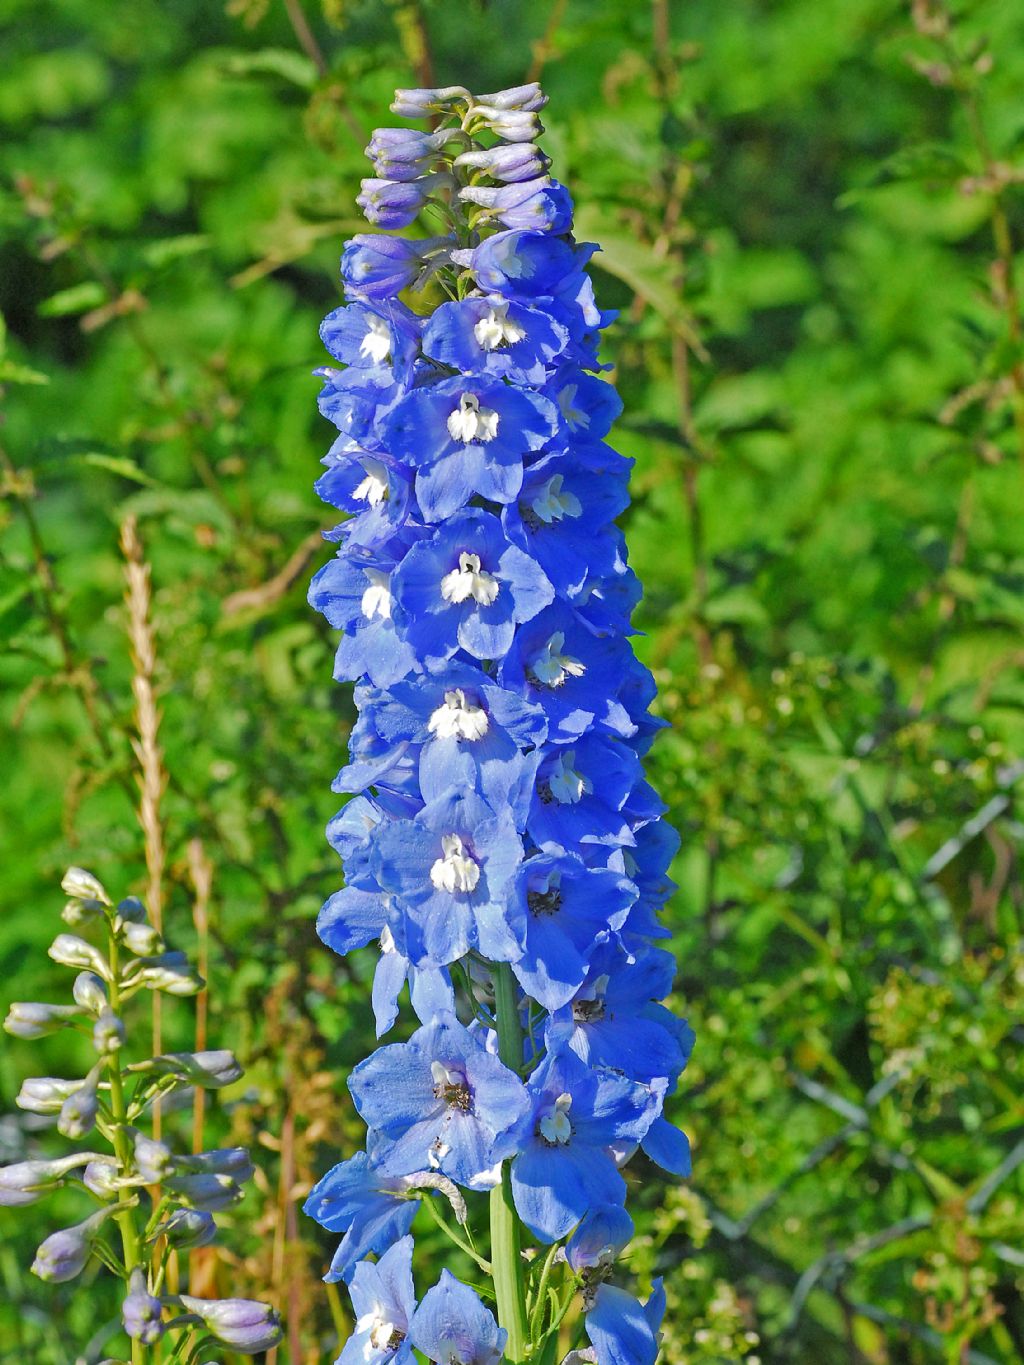 Dei bei fiori azzurri in mezzo al bosco